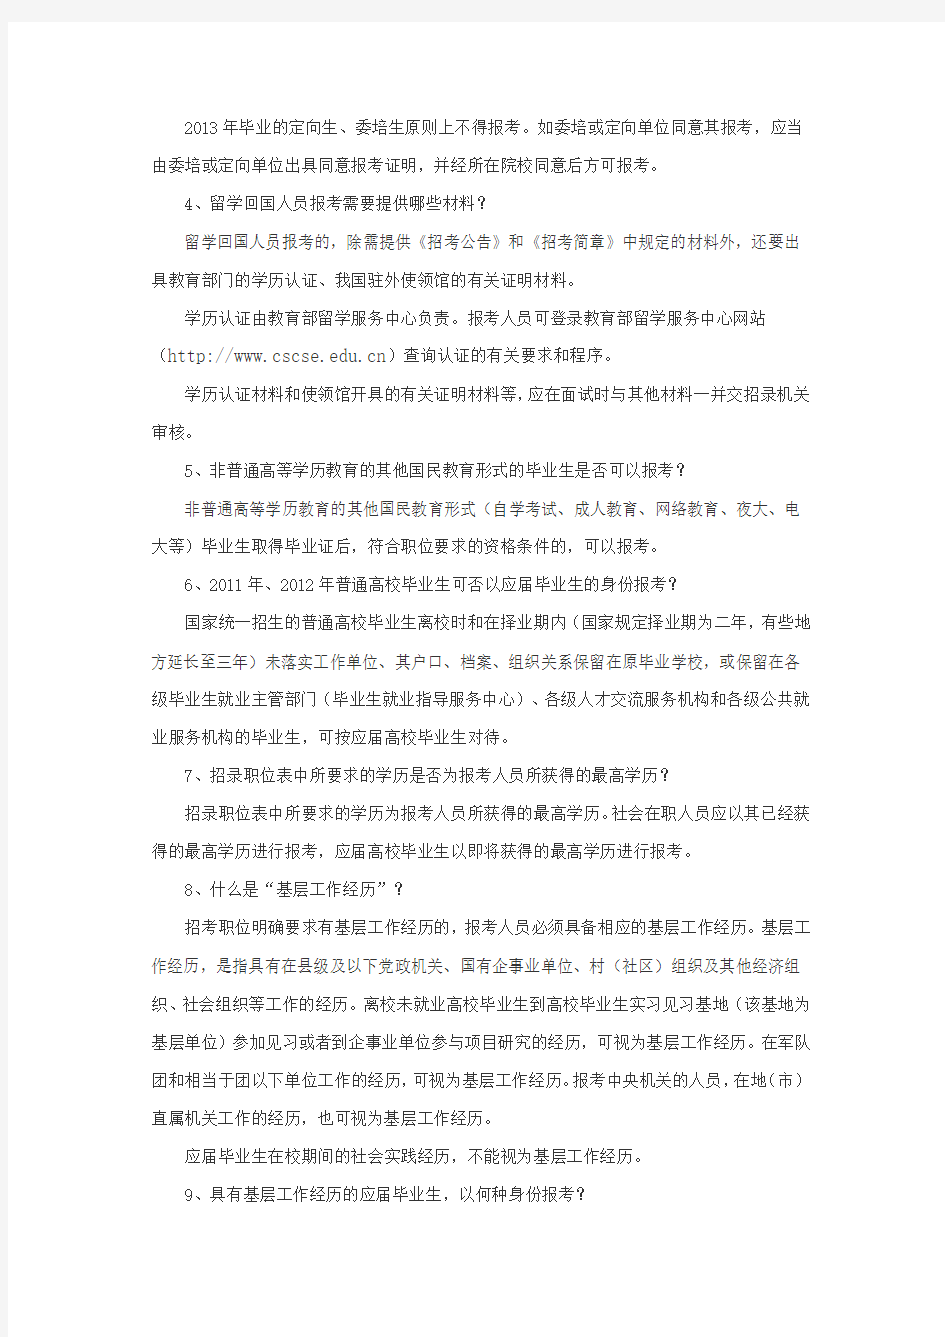 2014年江苏公务员考试报考指南完整版